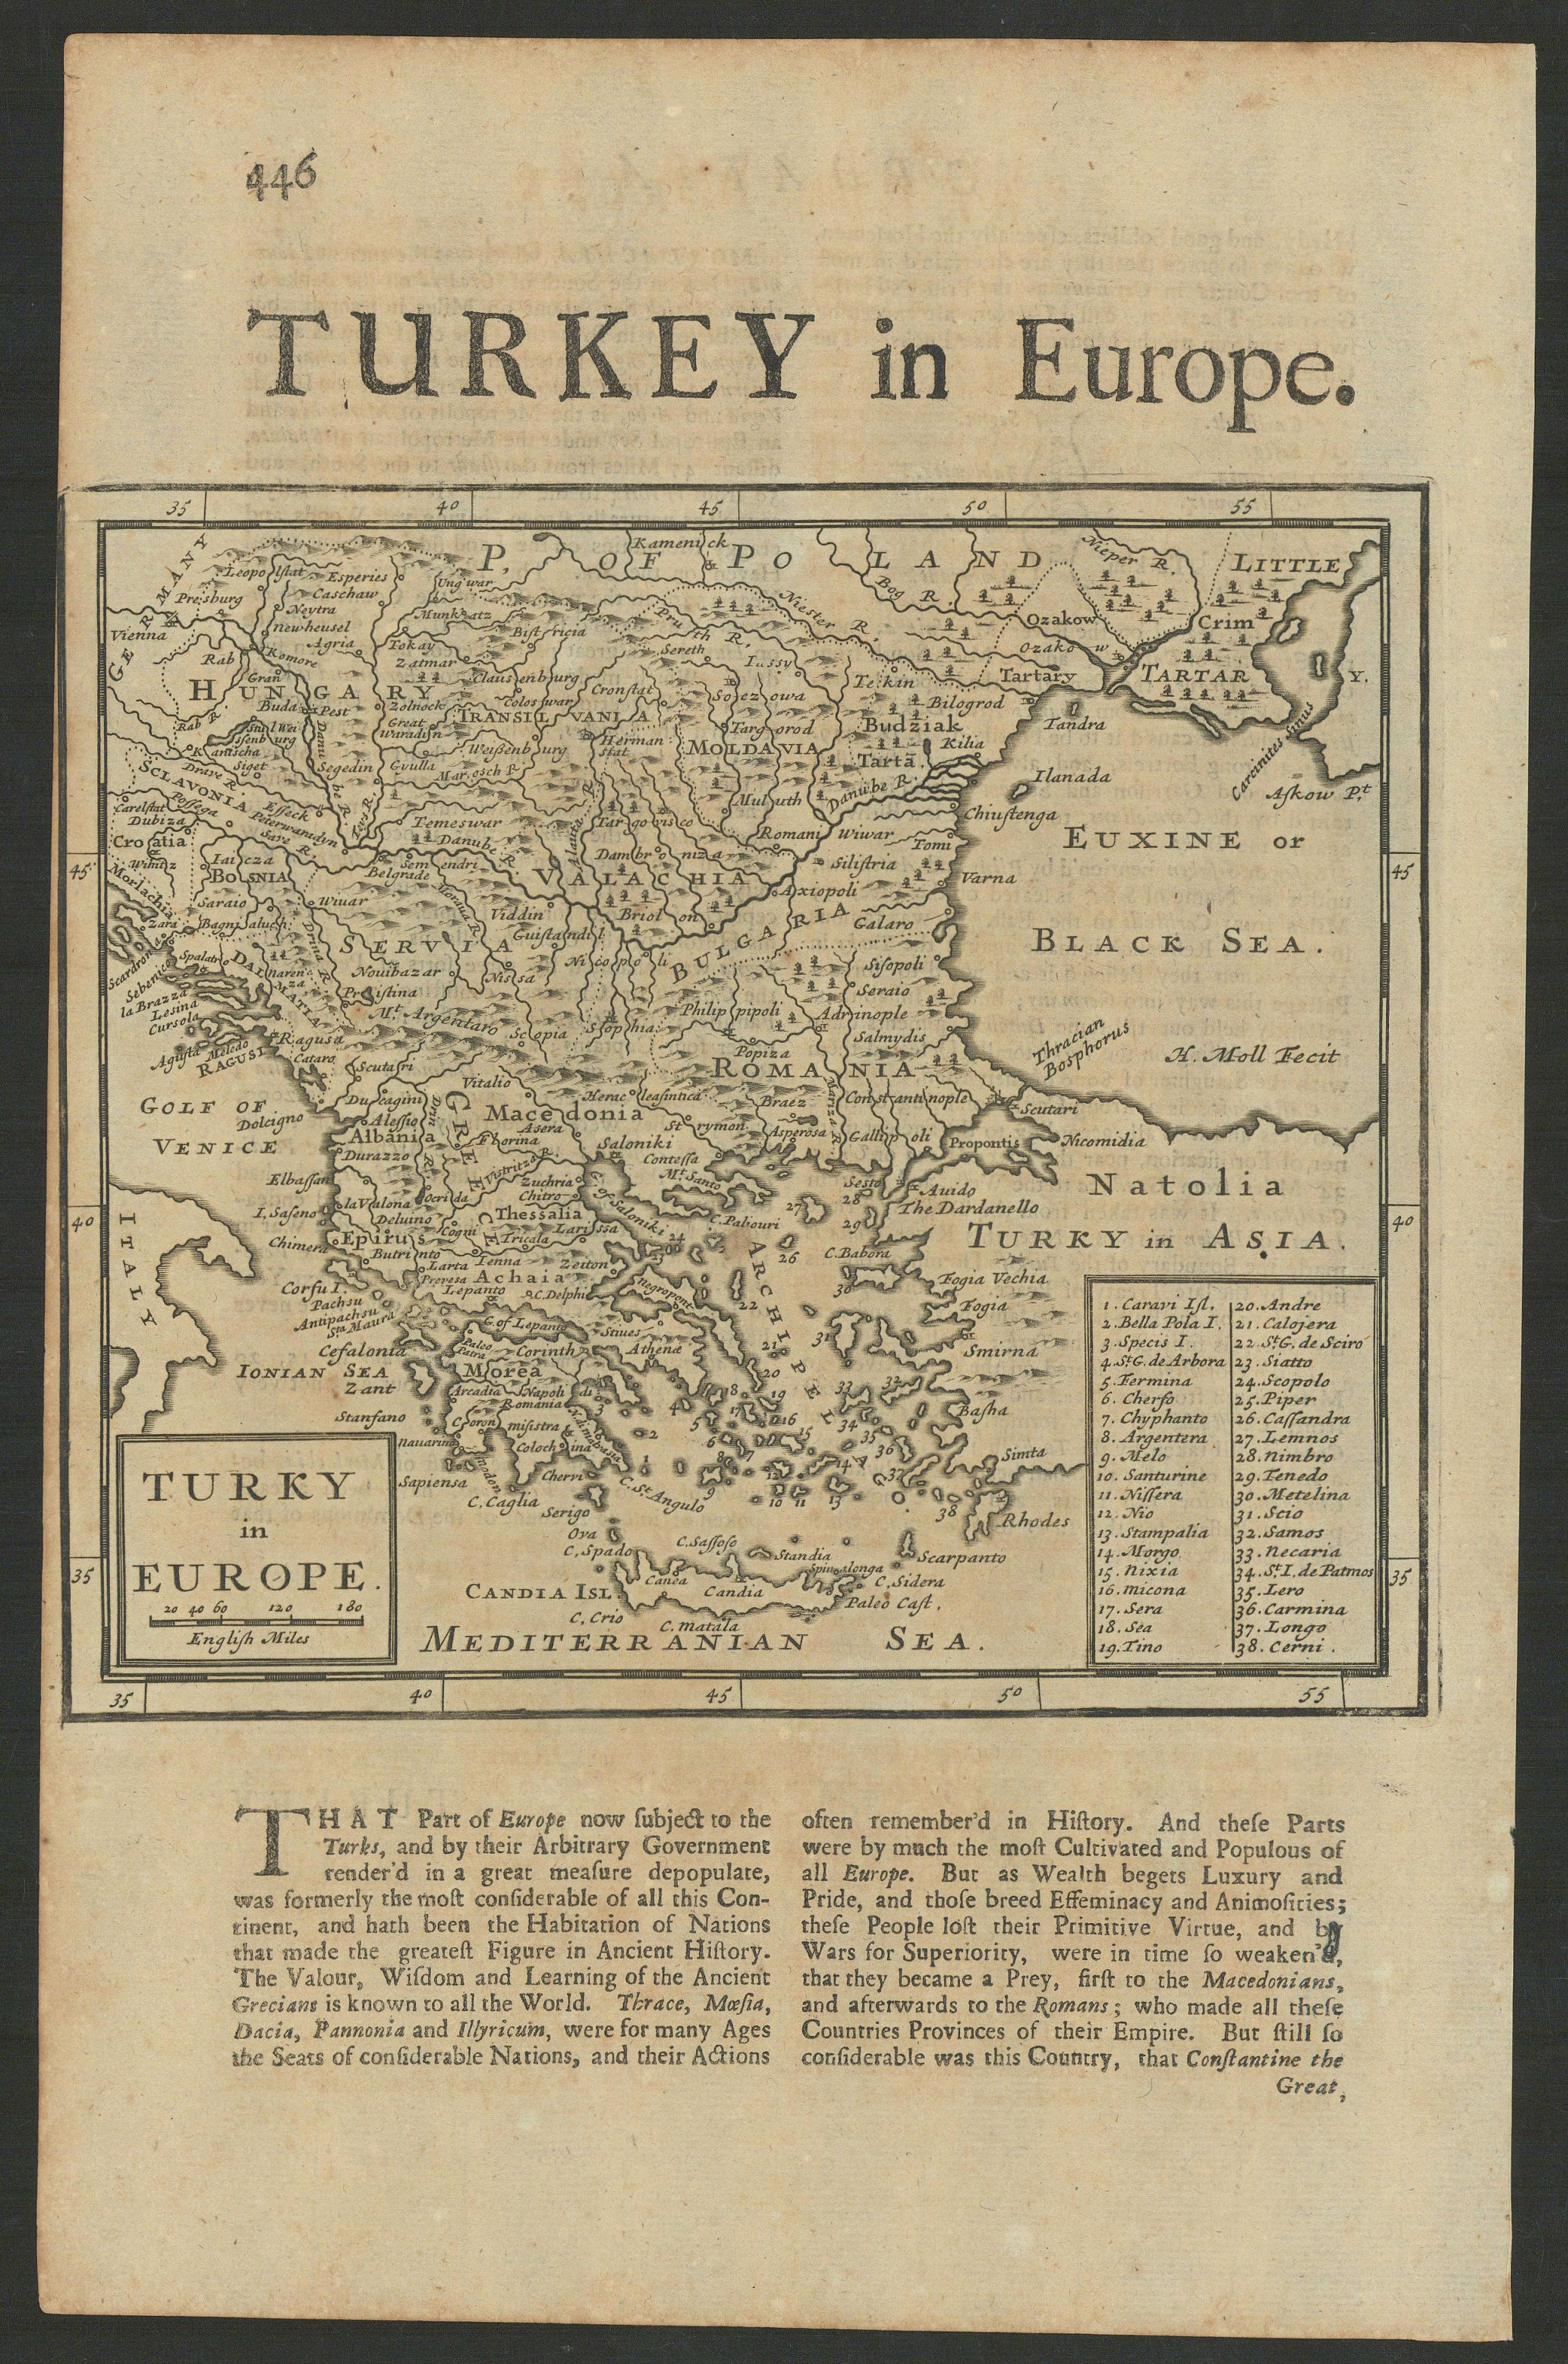 Associate Product Turky [Turkey] in Europe by Herman Moll. Balkans Greece Black Sea 1709 old map